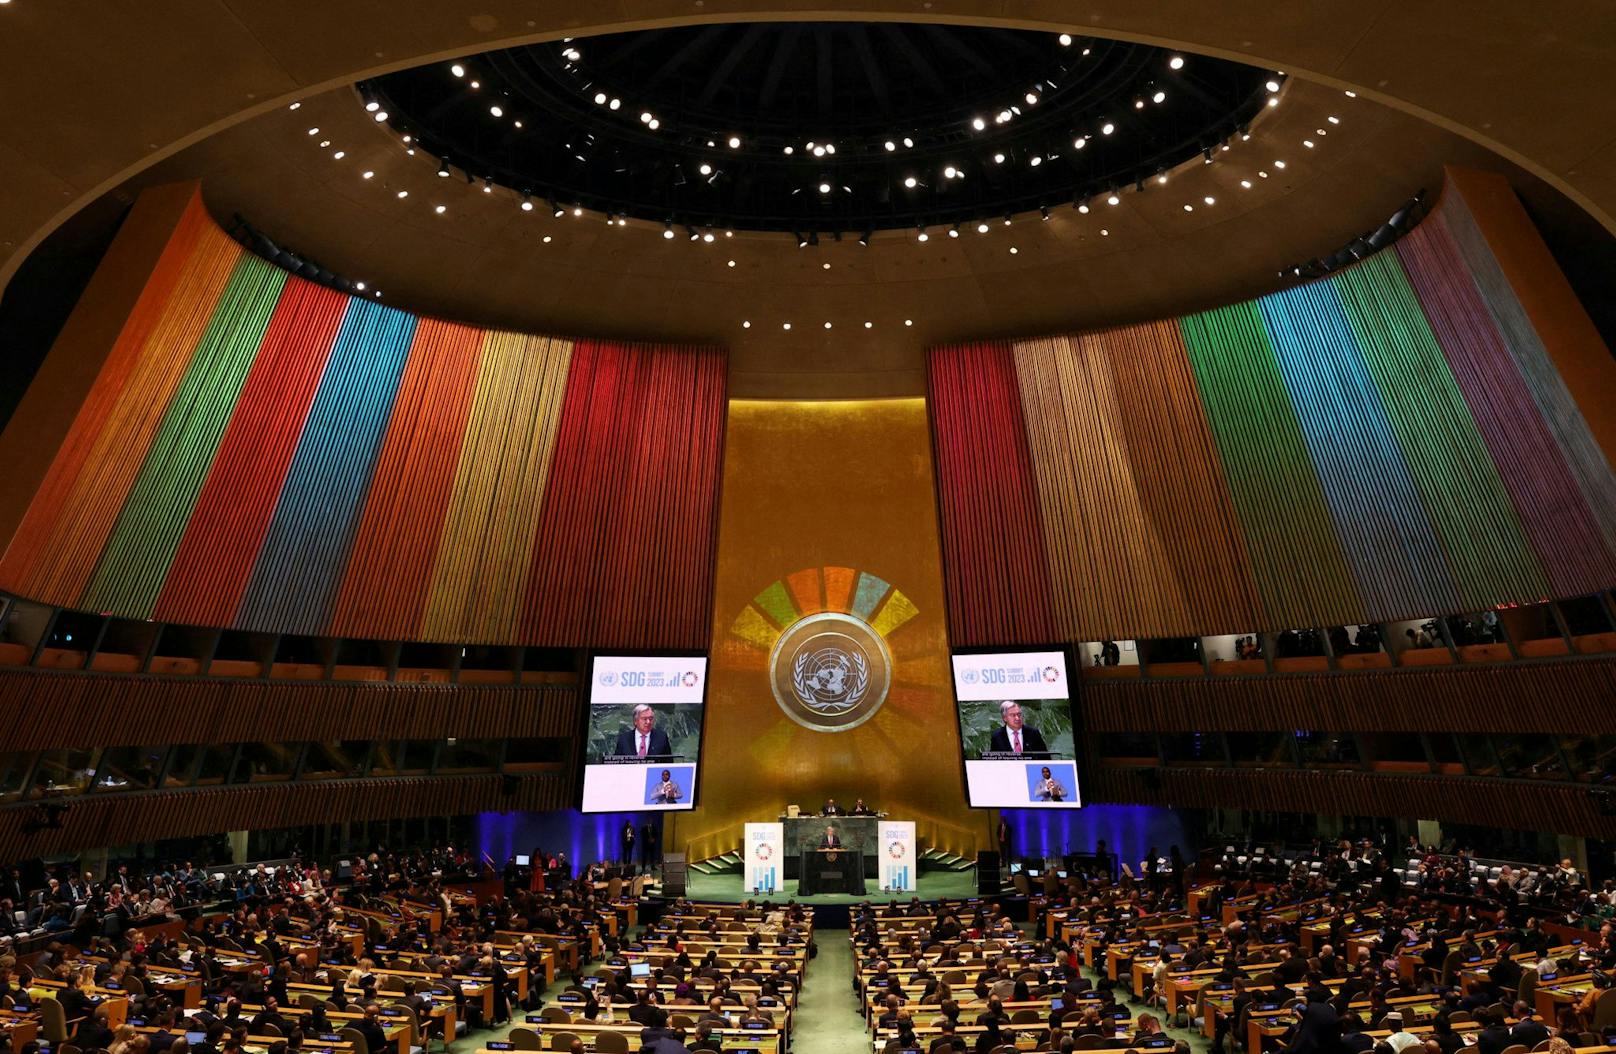 Derzeit findet die UN-Generalversammlung in New York statt. Alles steht unter dem Zeichen der sogenannten Sustainability Development Goals, kurz SDG’s.